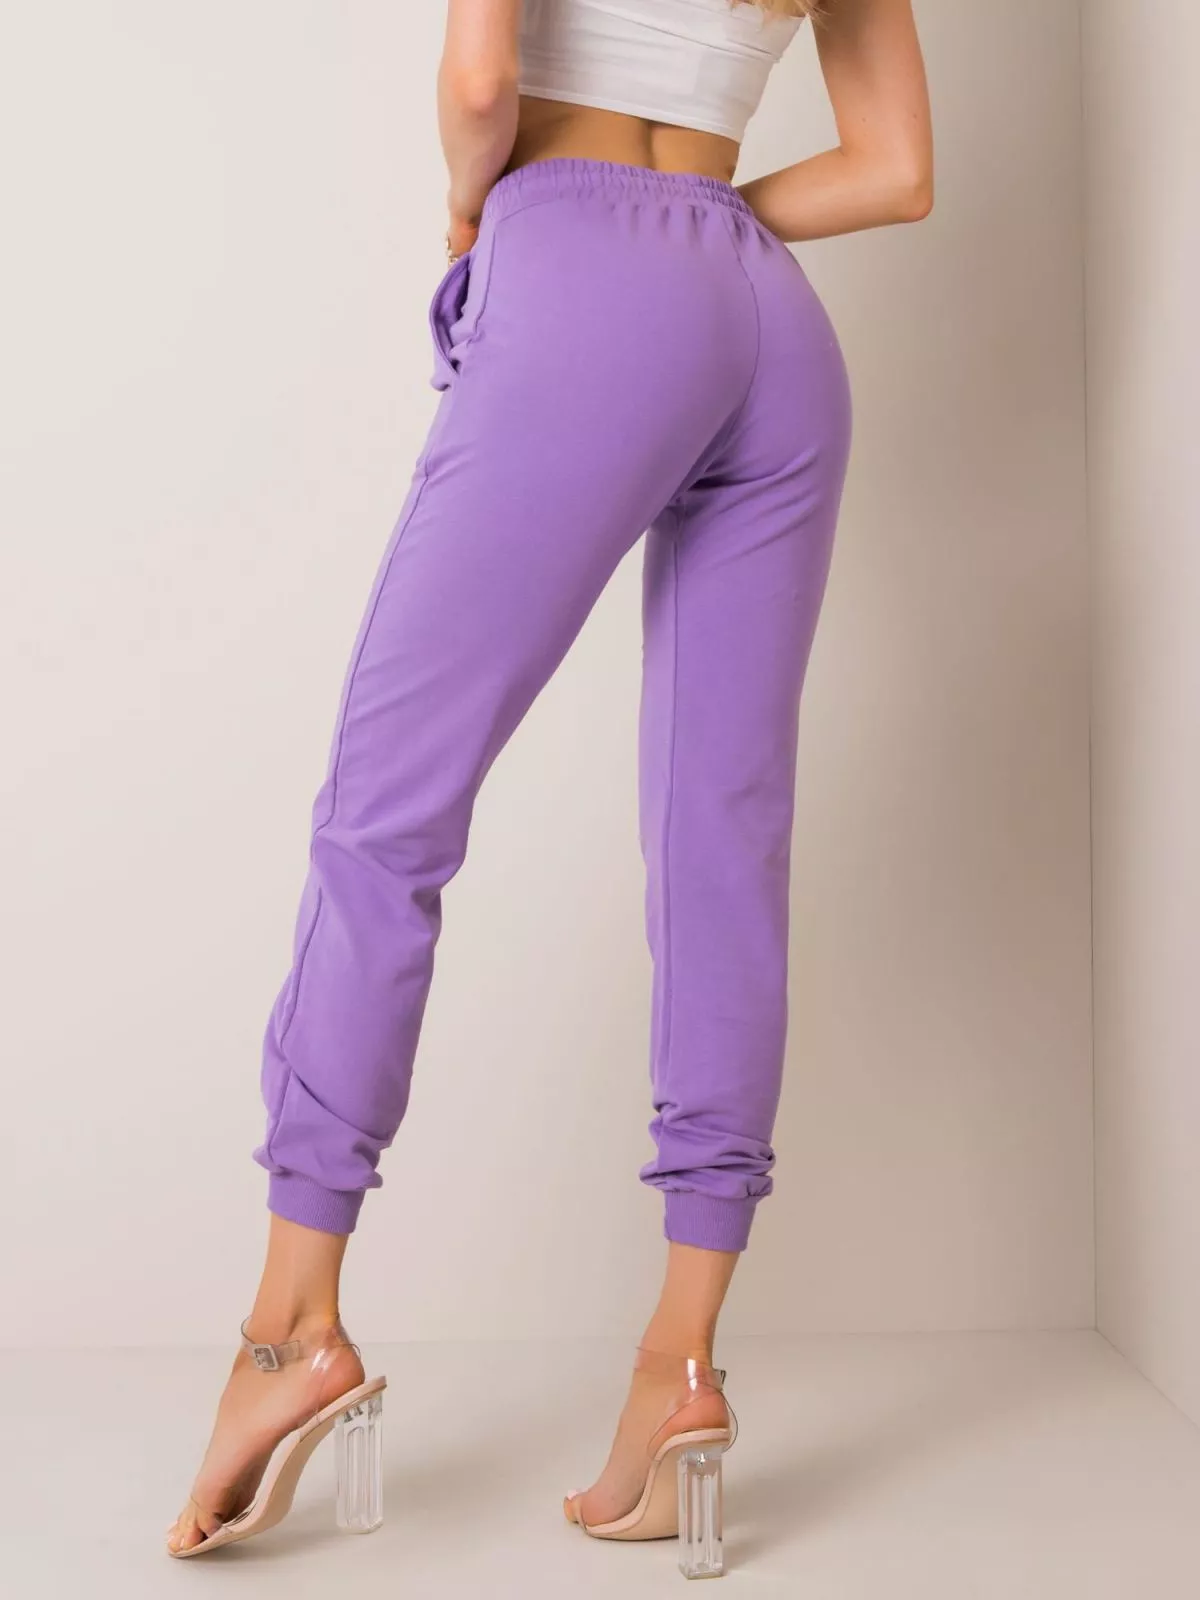 Pantaloni trening dama violet - pantaloni